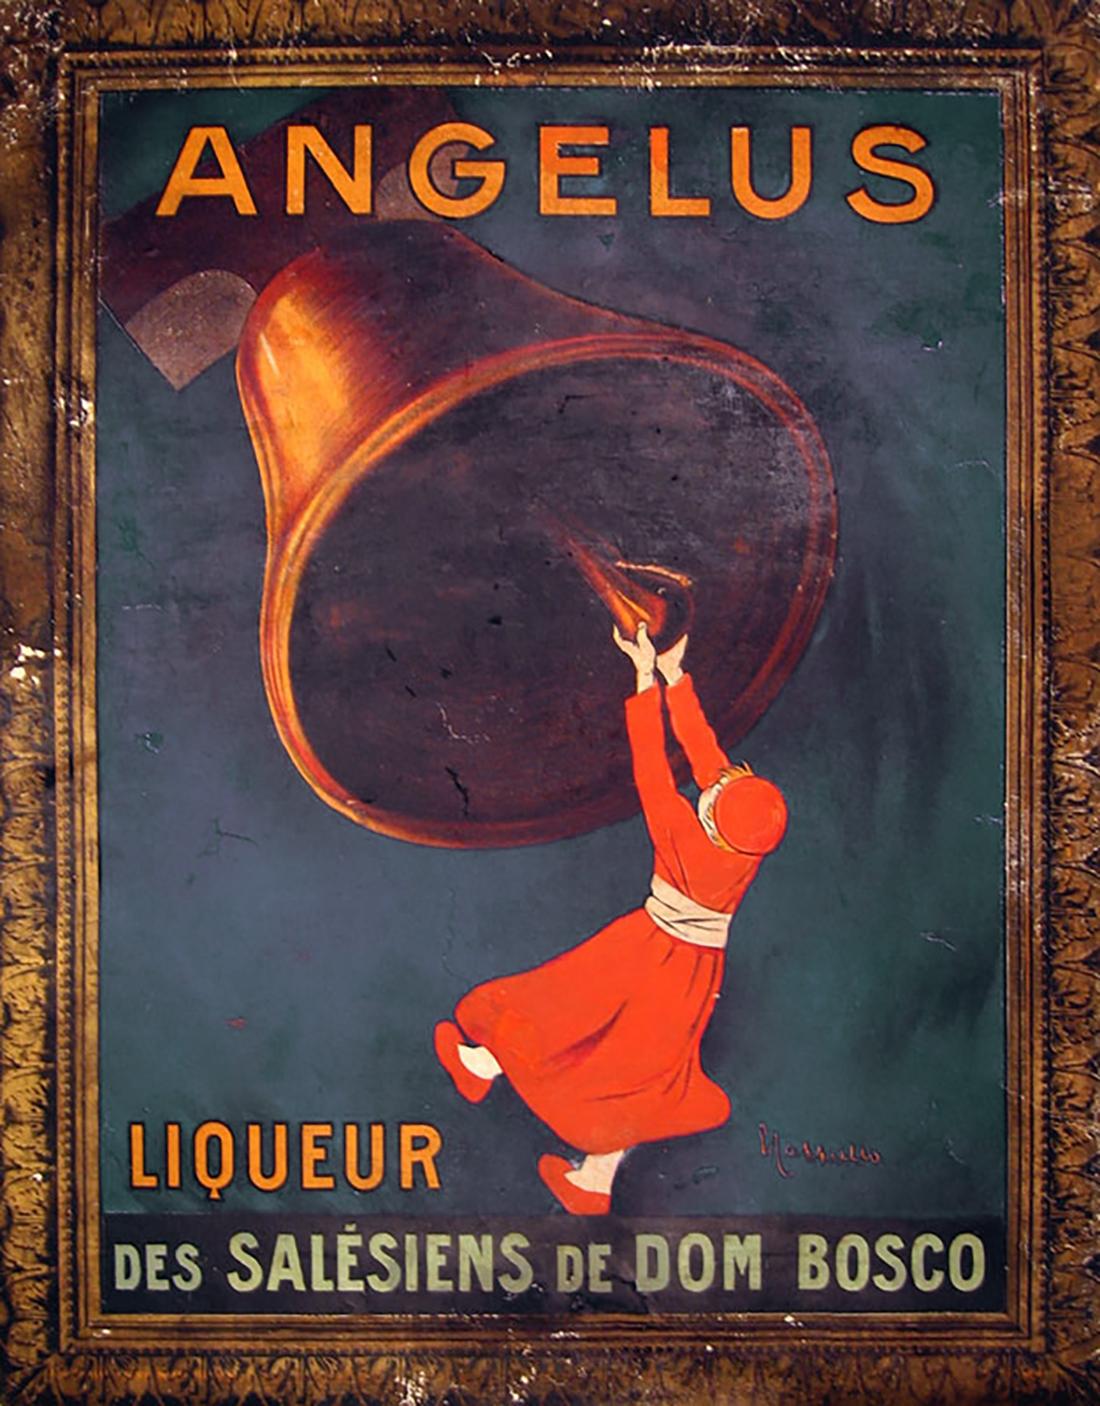 Original Antique French Poster, "Angelus Liquer", Leonetto Cappiello, Lithograph